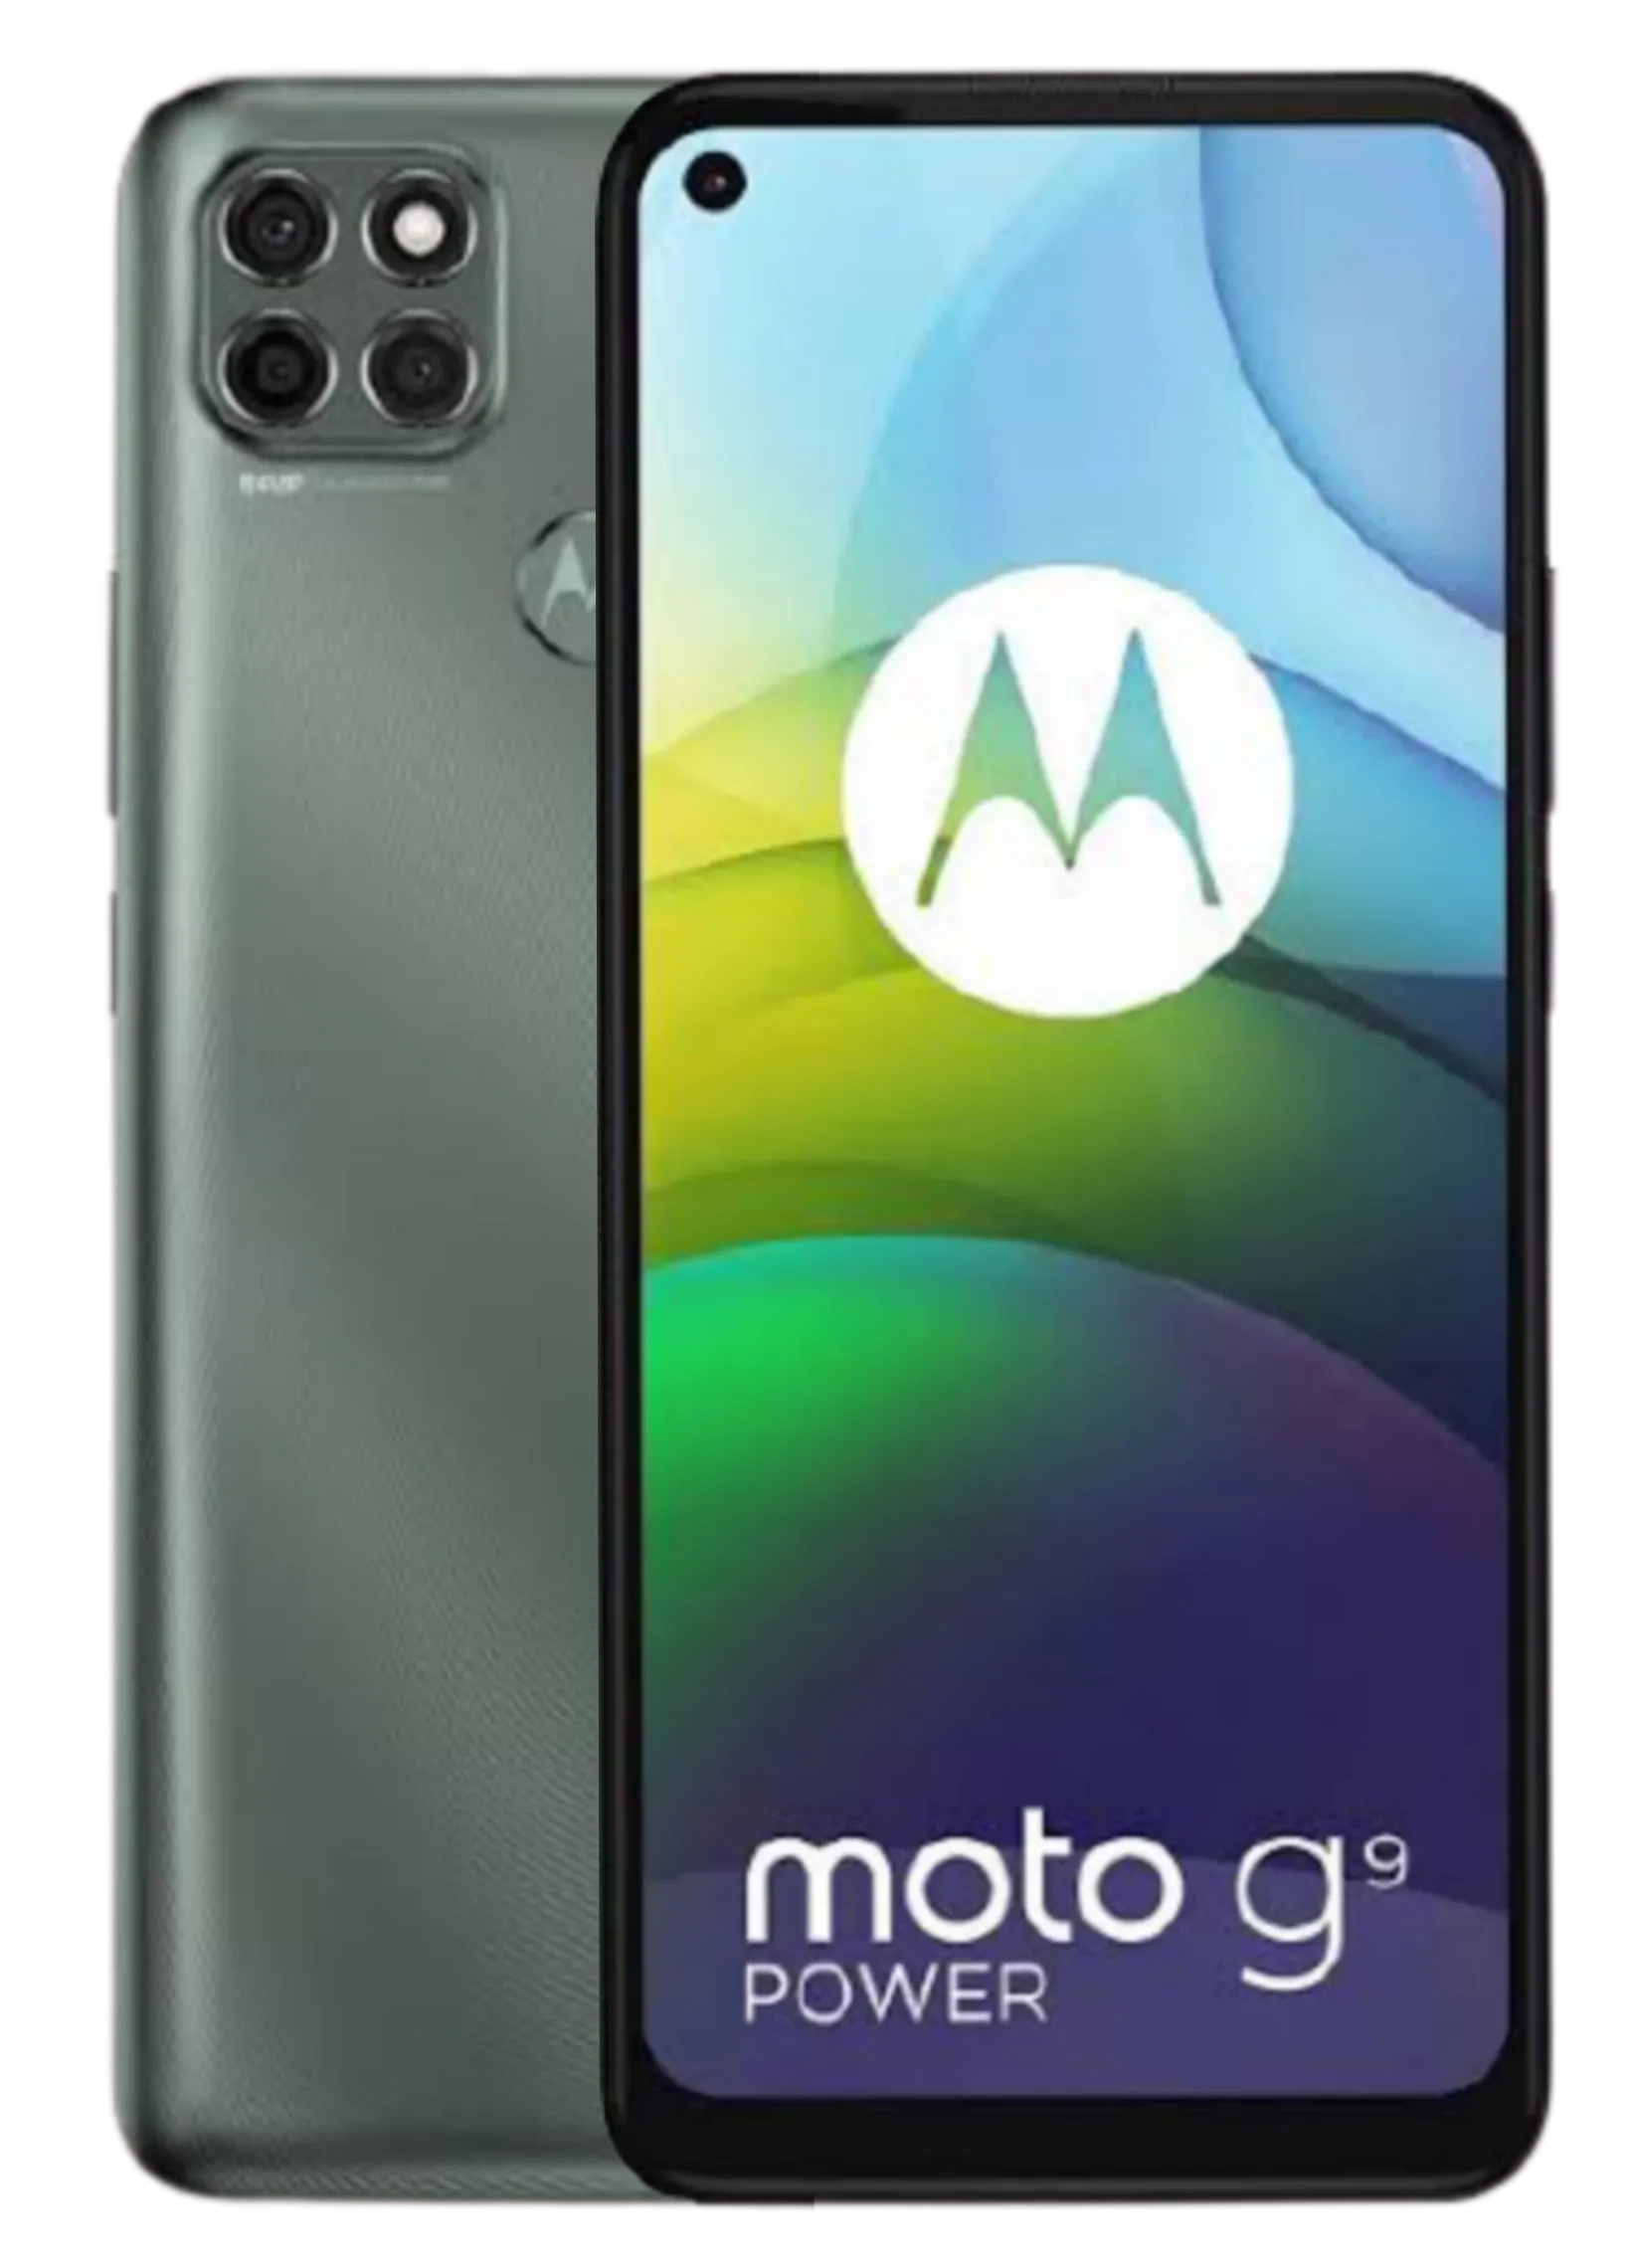 Motorola Moto G9 Power – Full Specifications